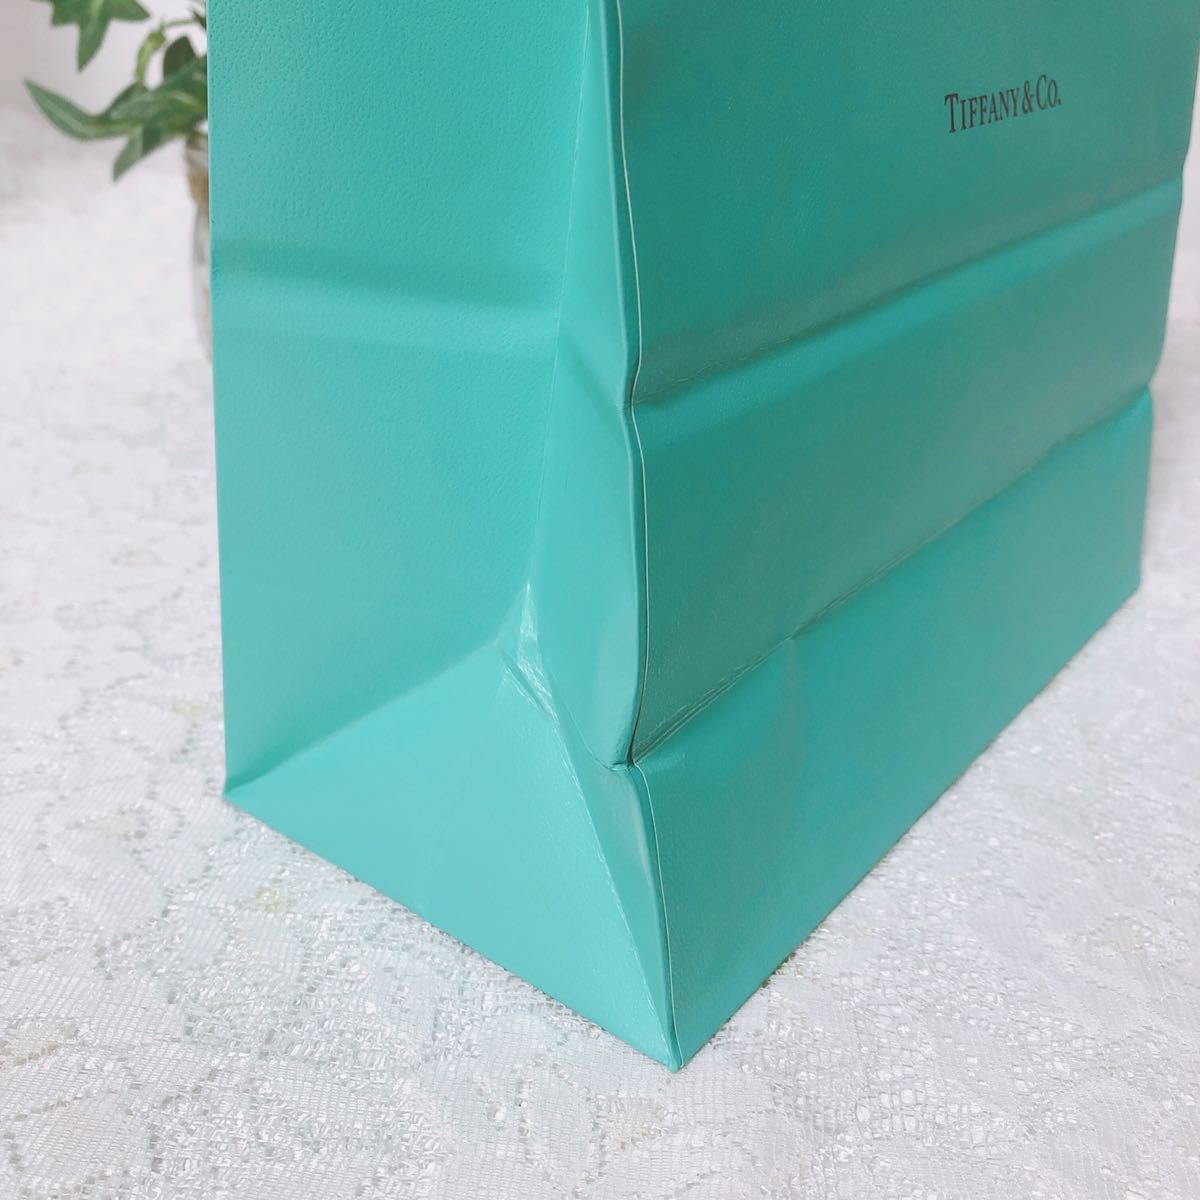 ティファニー「TIFFANY&Co.」ショッパー 小物箱サイズ (3044) 正規品 付属品 ショップ袋 ブランド紙袋 封筒付き 折らずに配送の画像7